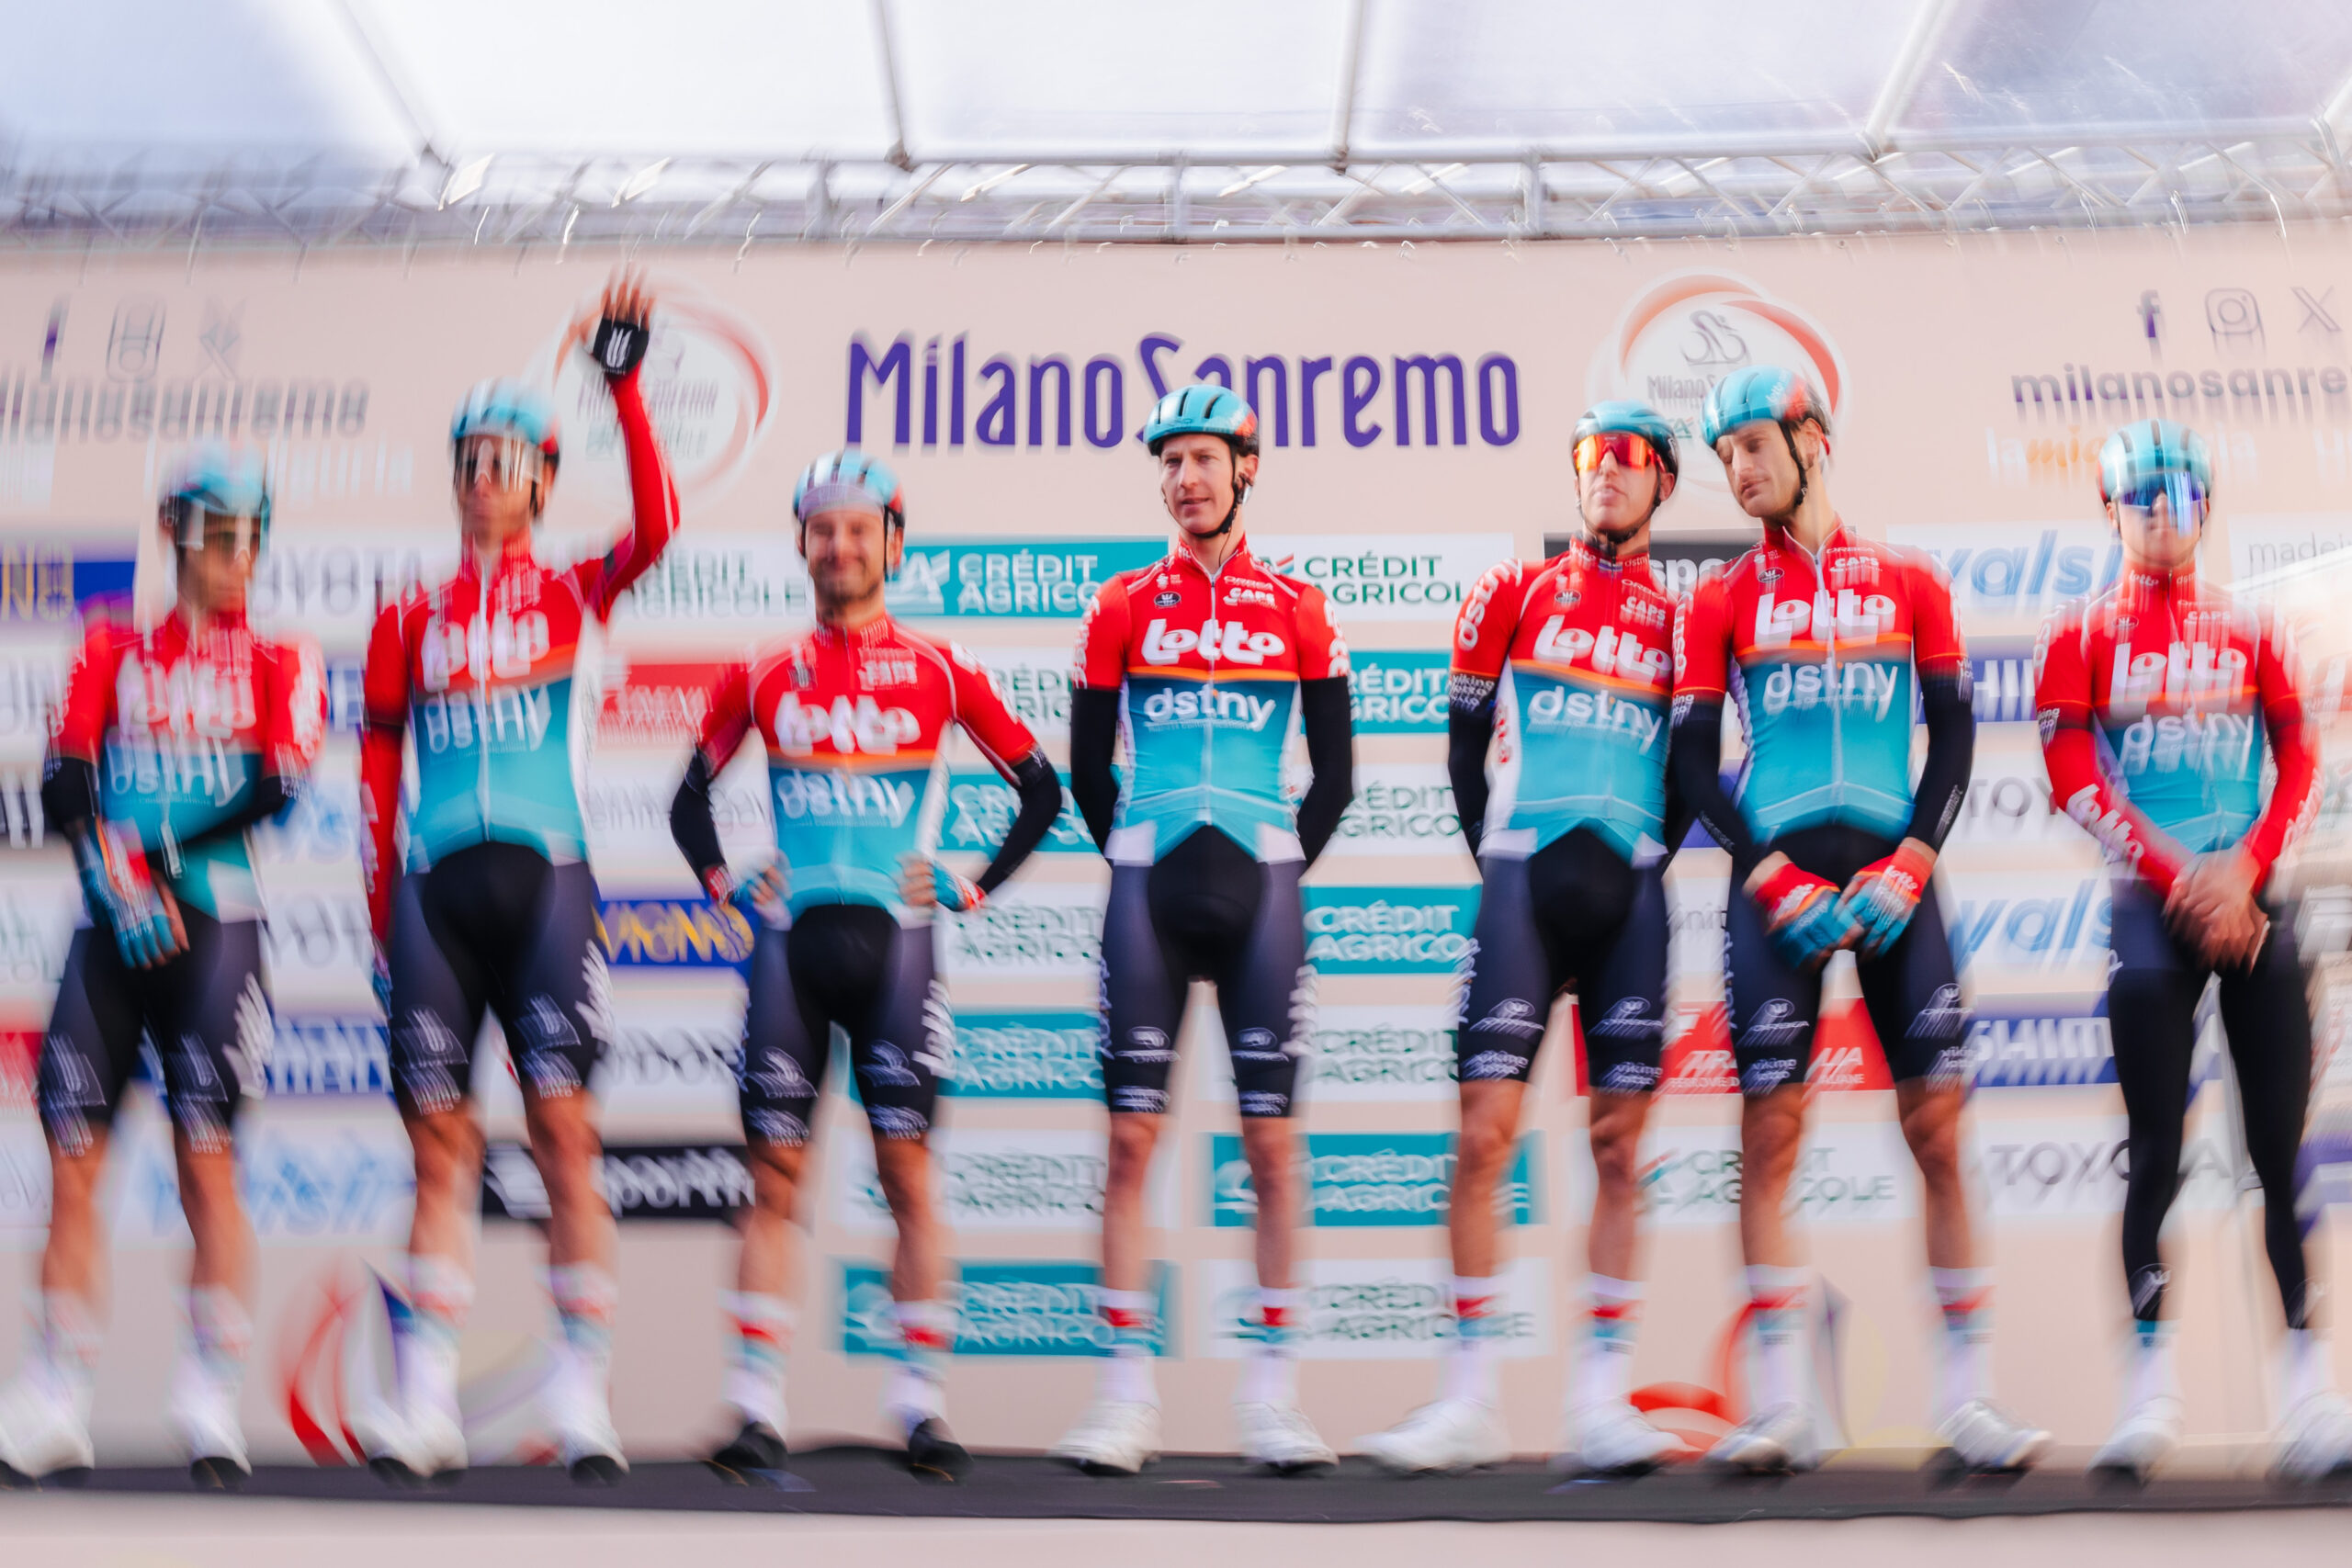 Lotto-Dstny se despide de Italia tras una excelente actuación en Milán-San Remo